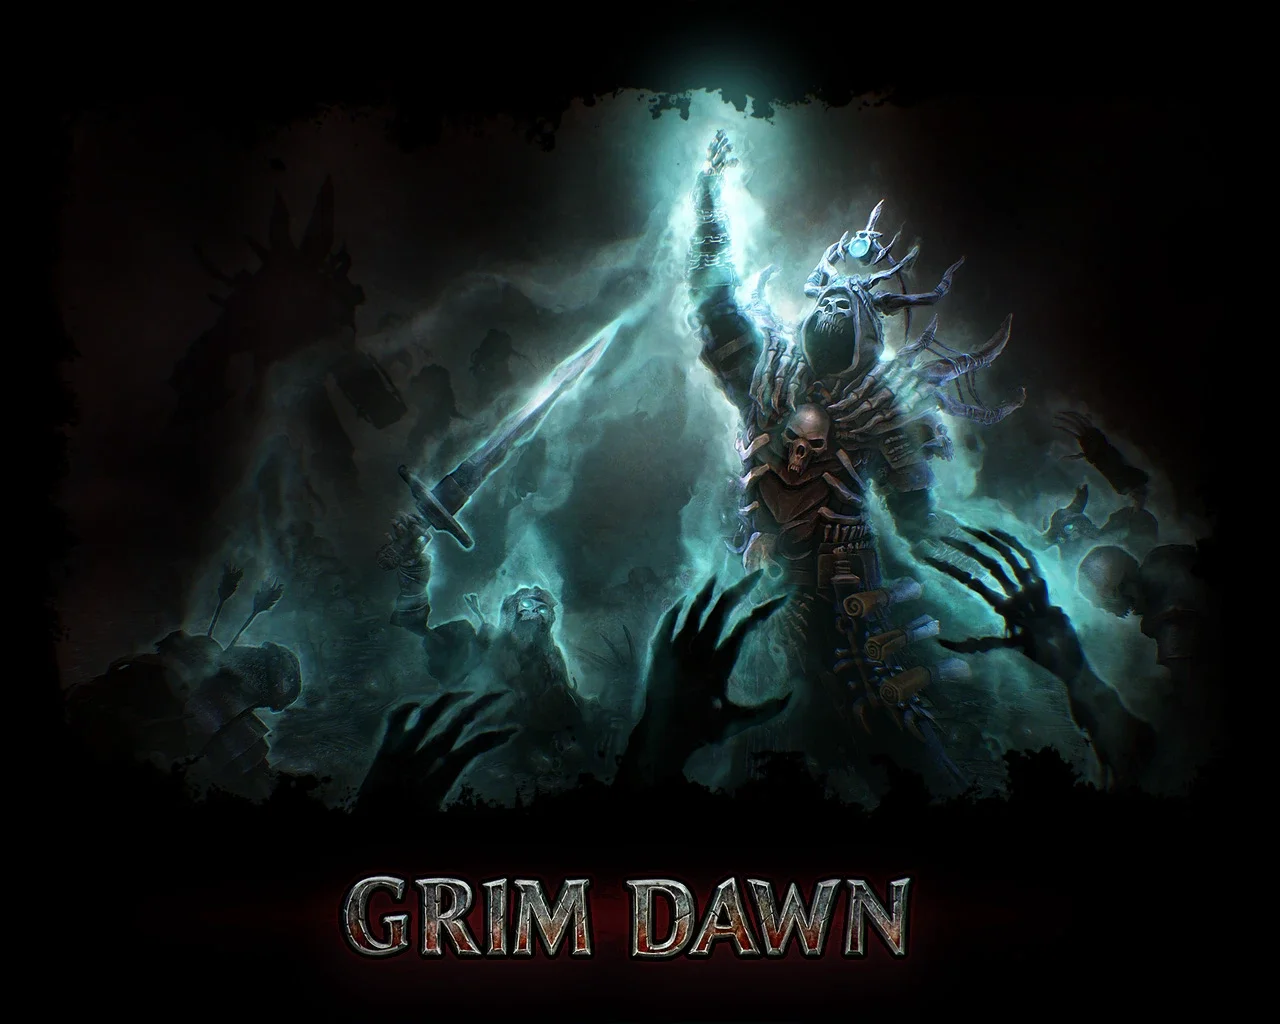 Grim dawn steam или gog фото 65